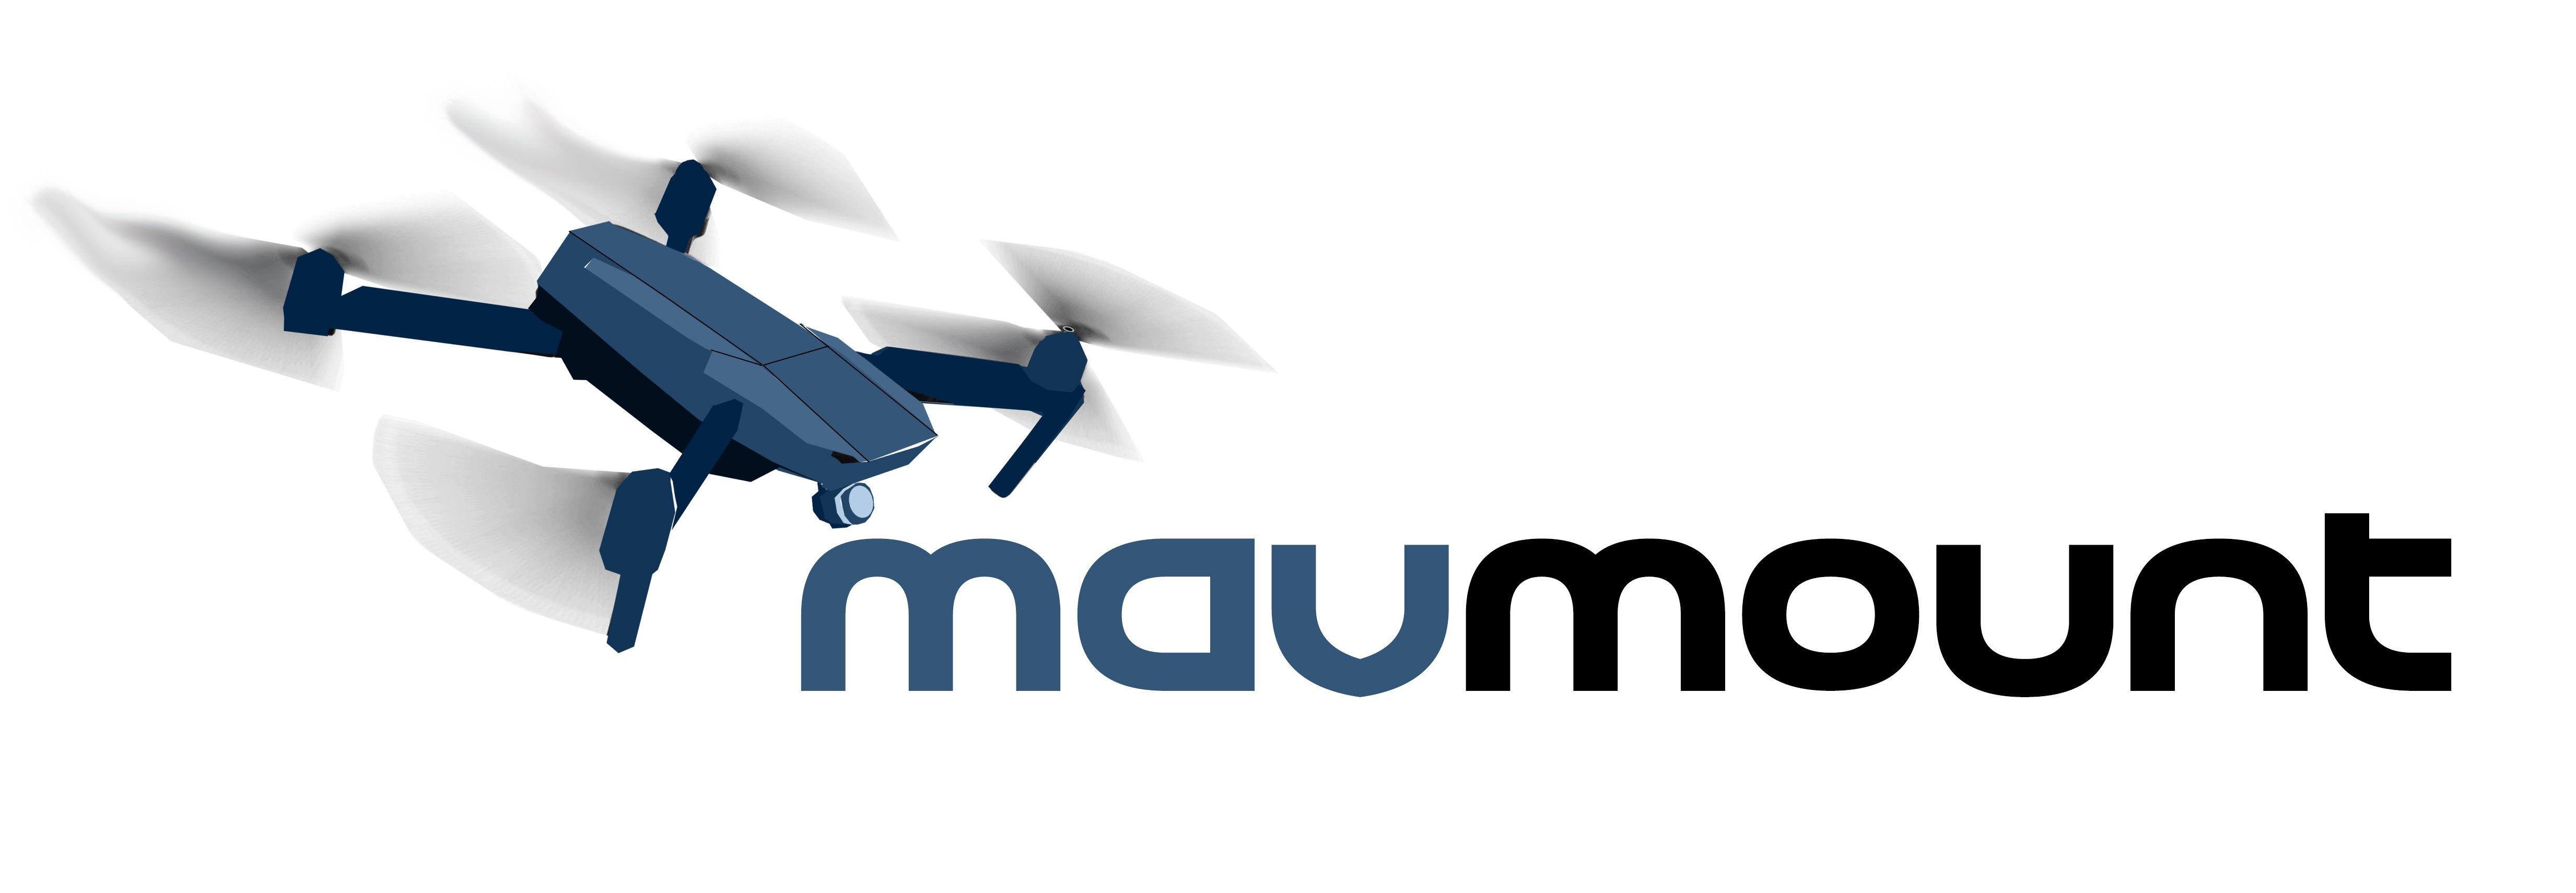 Mavic Logo - Gunmetal Grey MavMount 3.0 DJI Mavic 2, Mavic Zoom, Mavic Pro, AIR ...